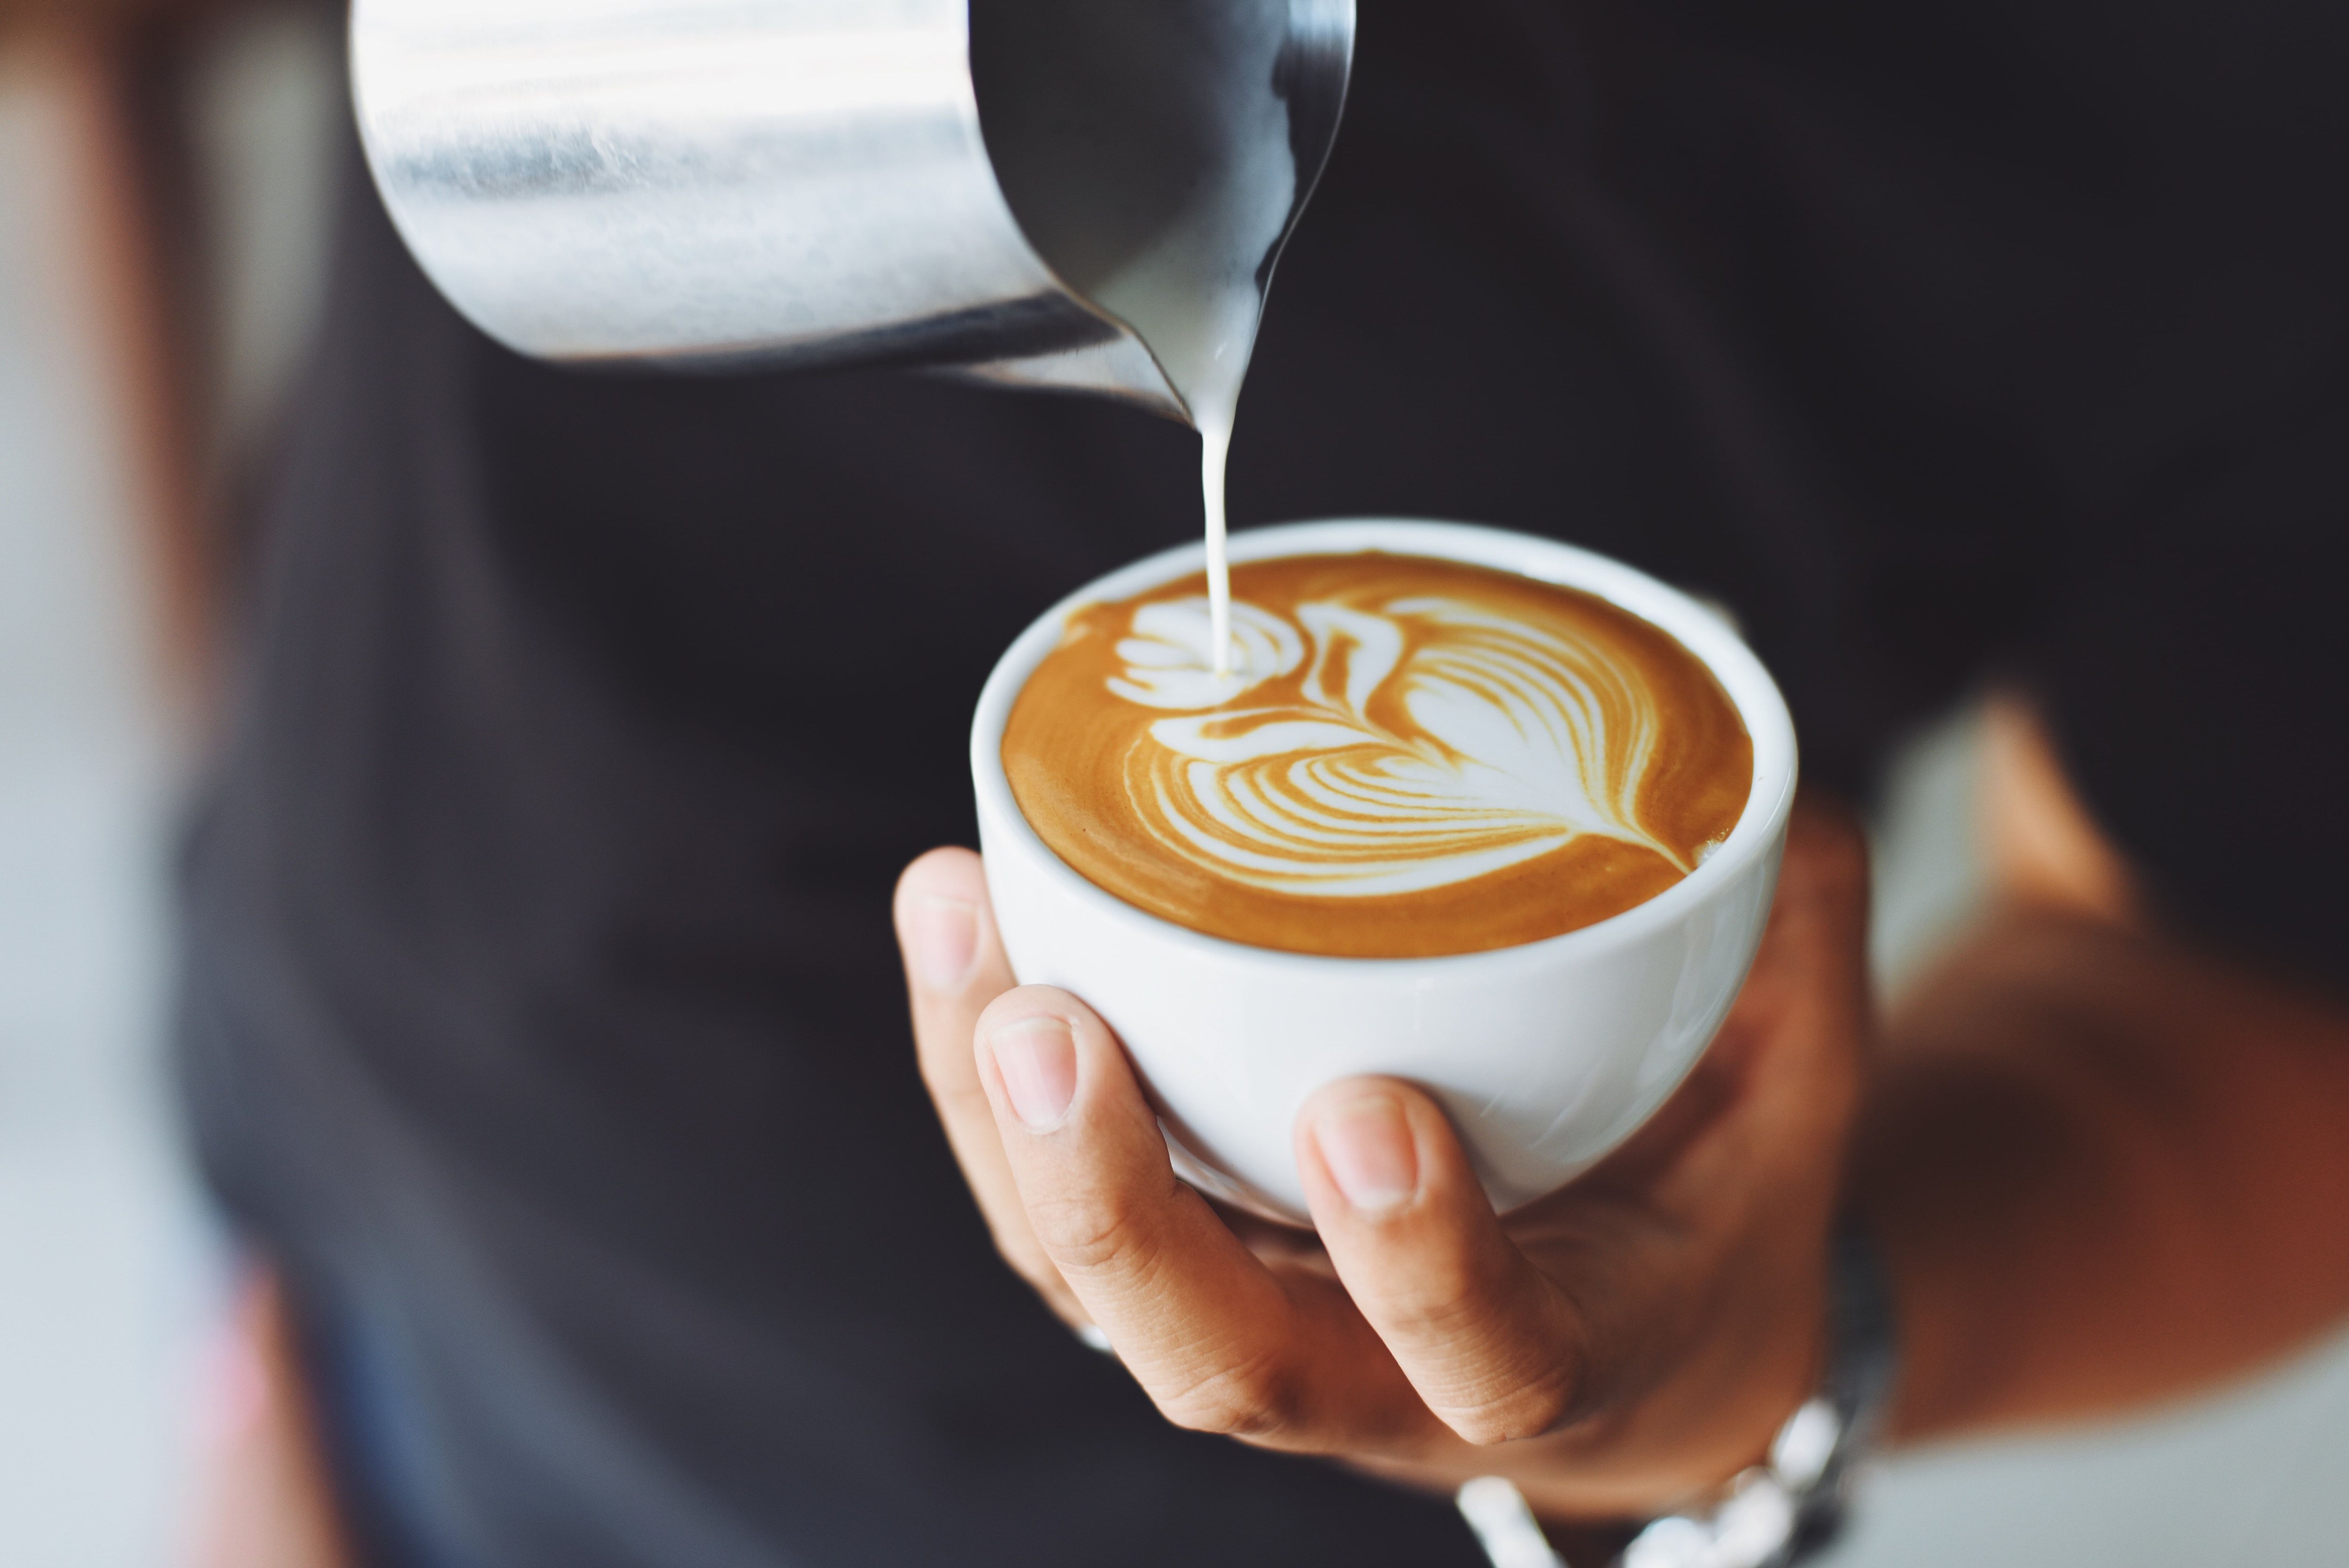 El café previo a embarcar debería ser evitado, si se quiere evitar algún malestar como la taquicardia durante el vuelo (Pexels)